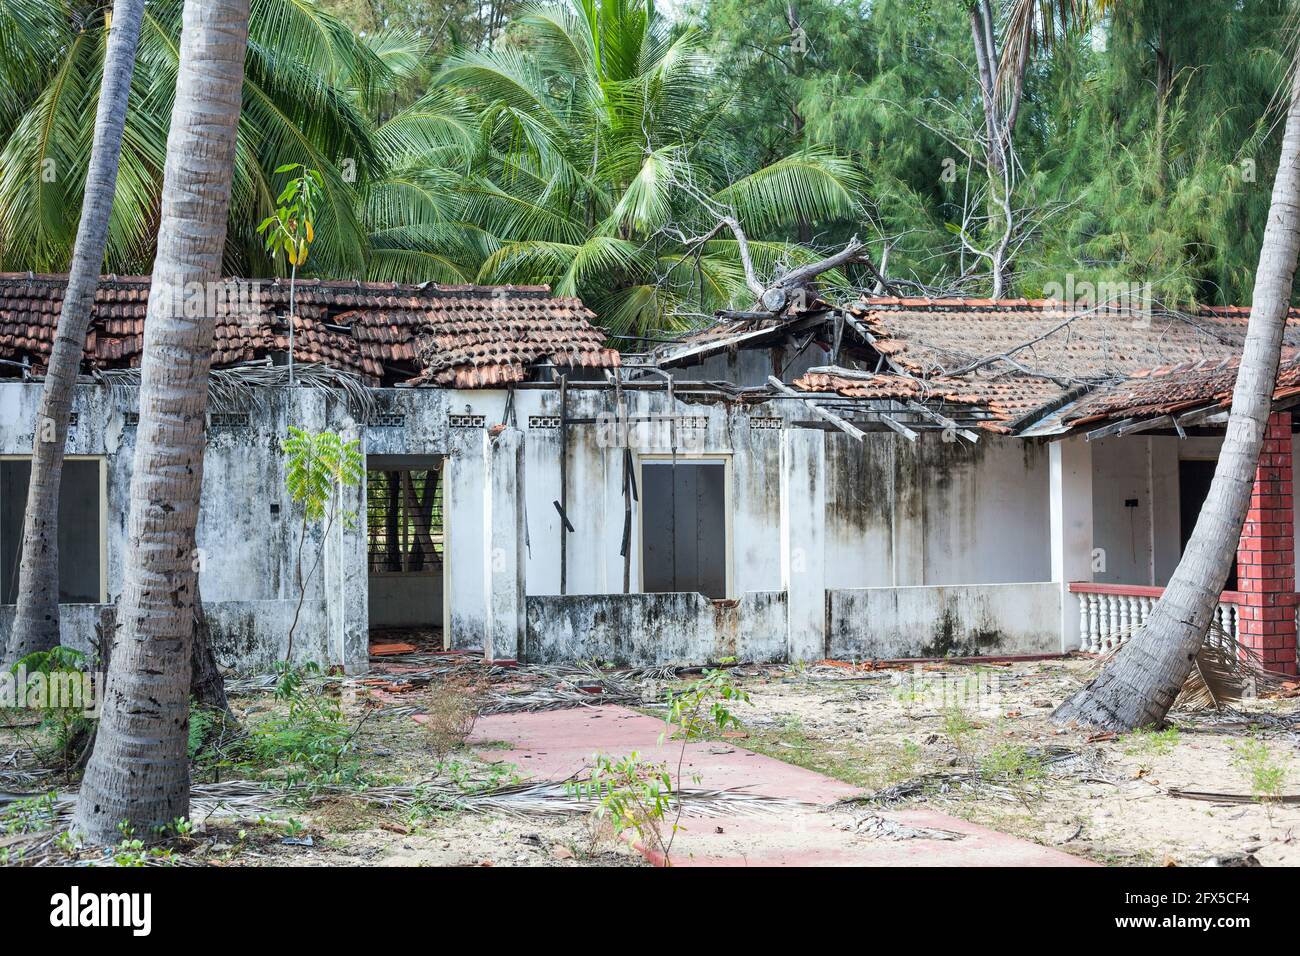 Maison abandonnée qui a subi des dommages pendant la guerre civile, Batticaloa, province orientale, Sri Lanka Banque D'Images